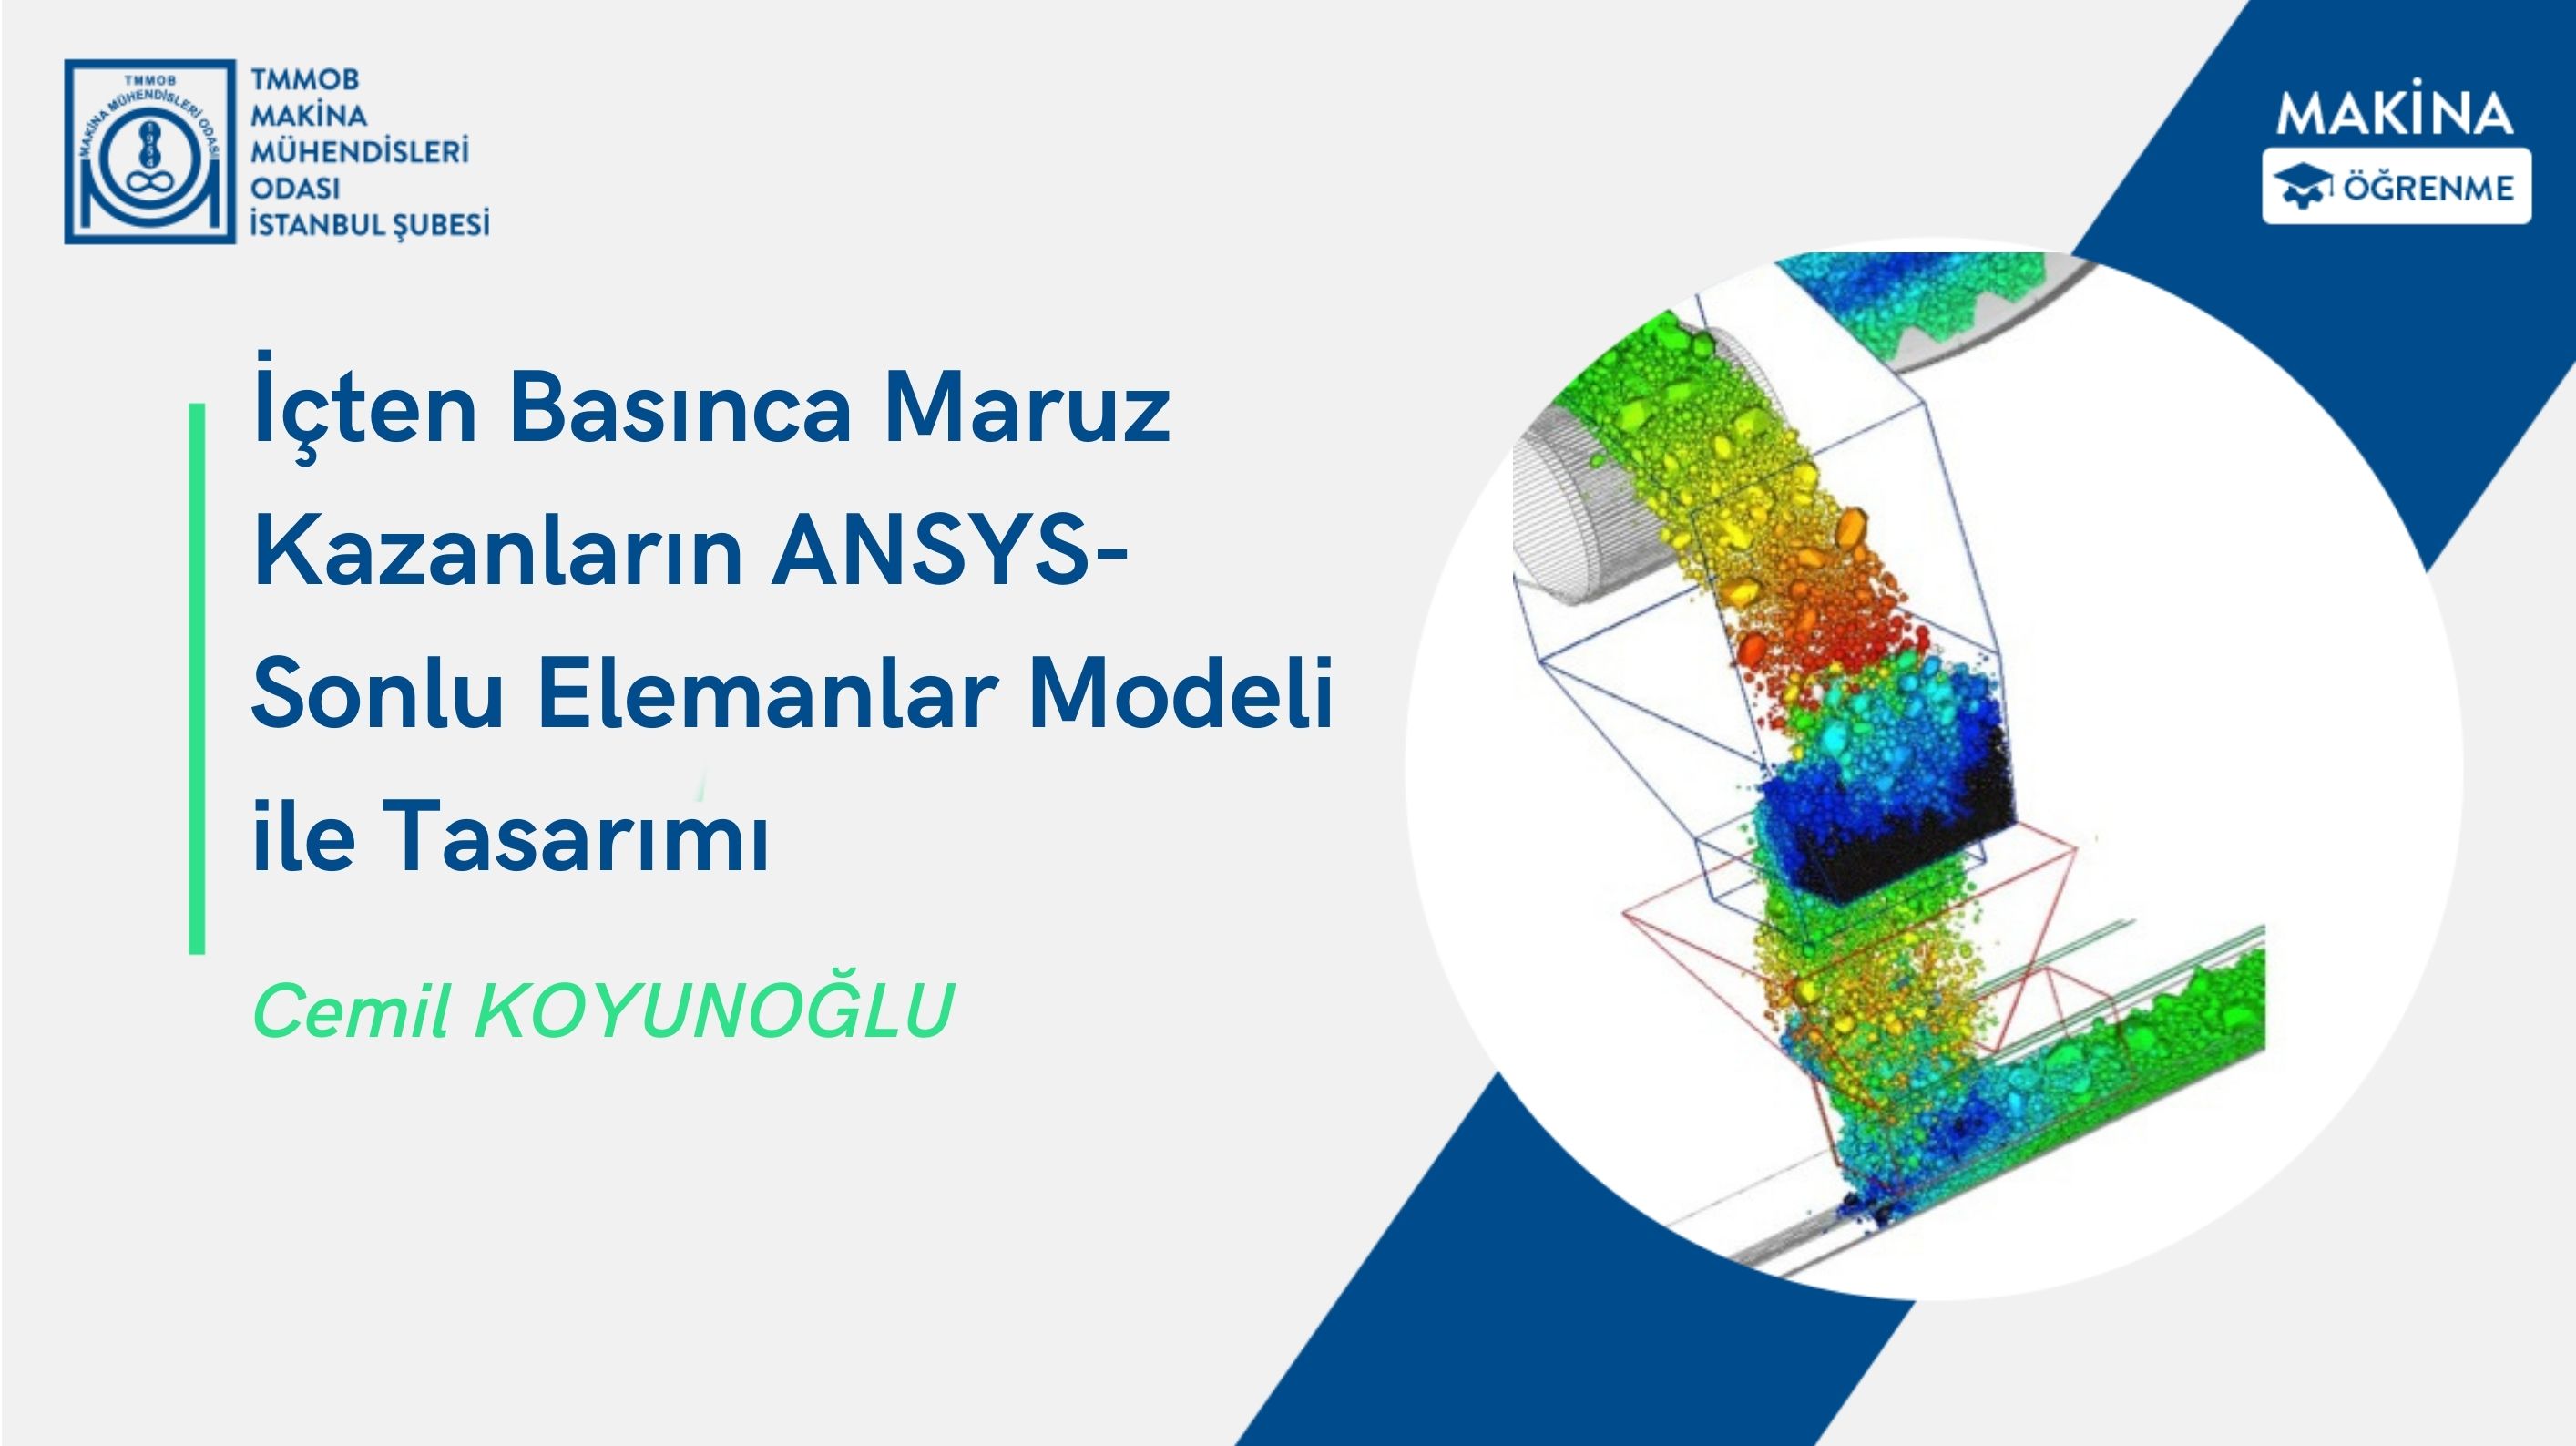 İçten Basınca Maruz Kazanların ANSYS- Sonlu Elemanlar Modeli ile Tasarımı